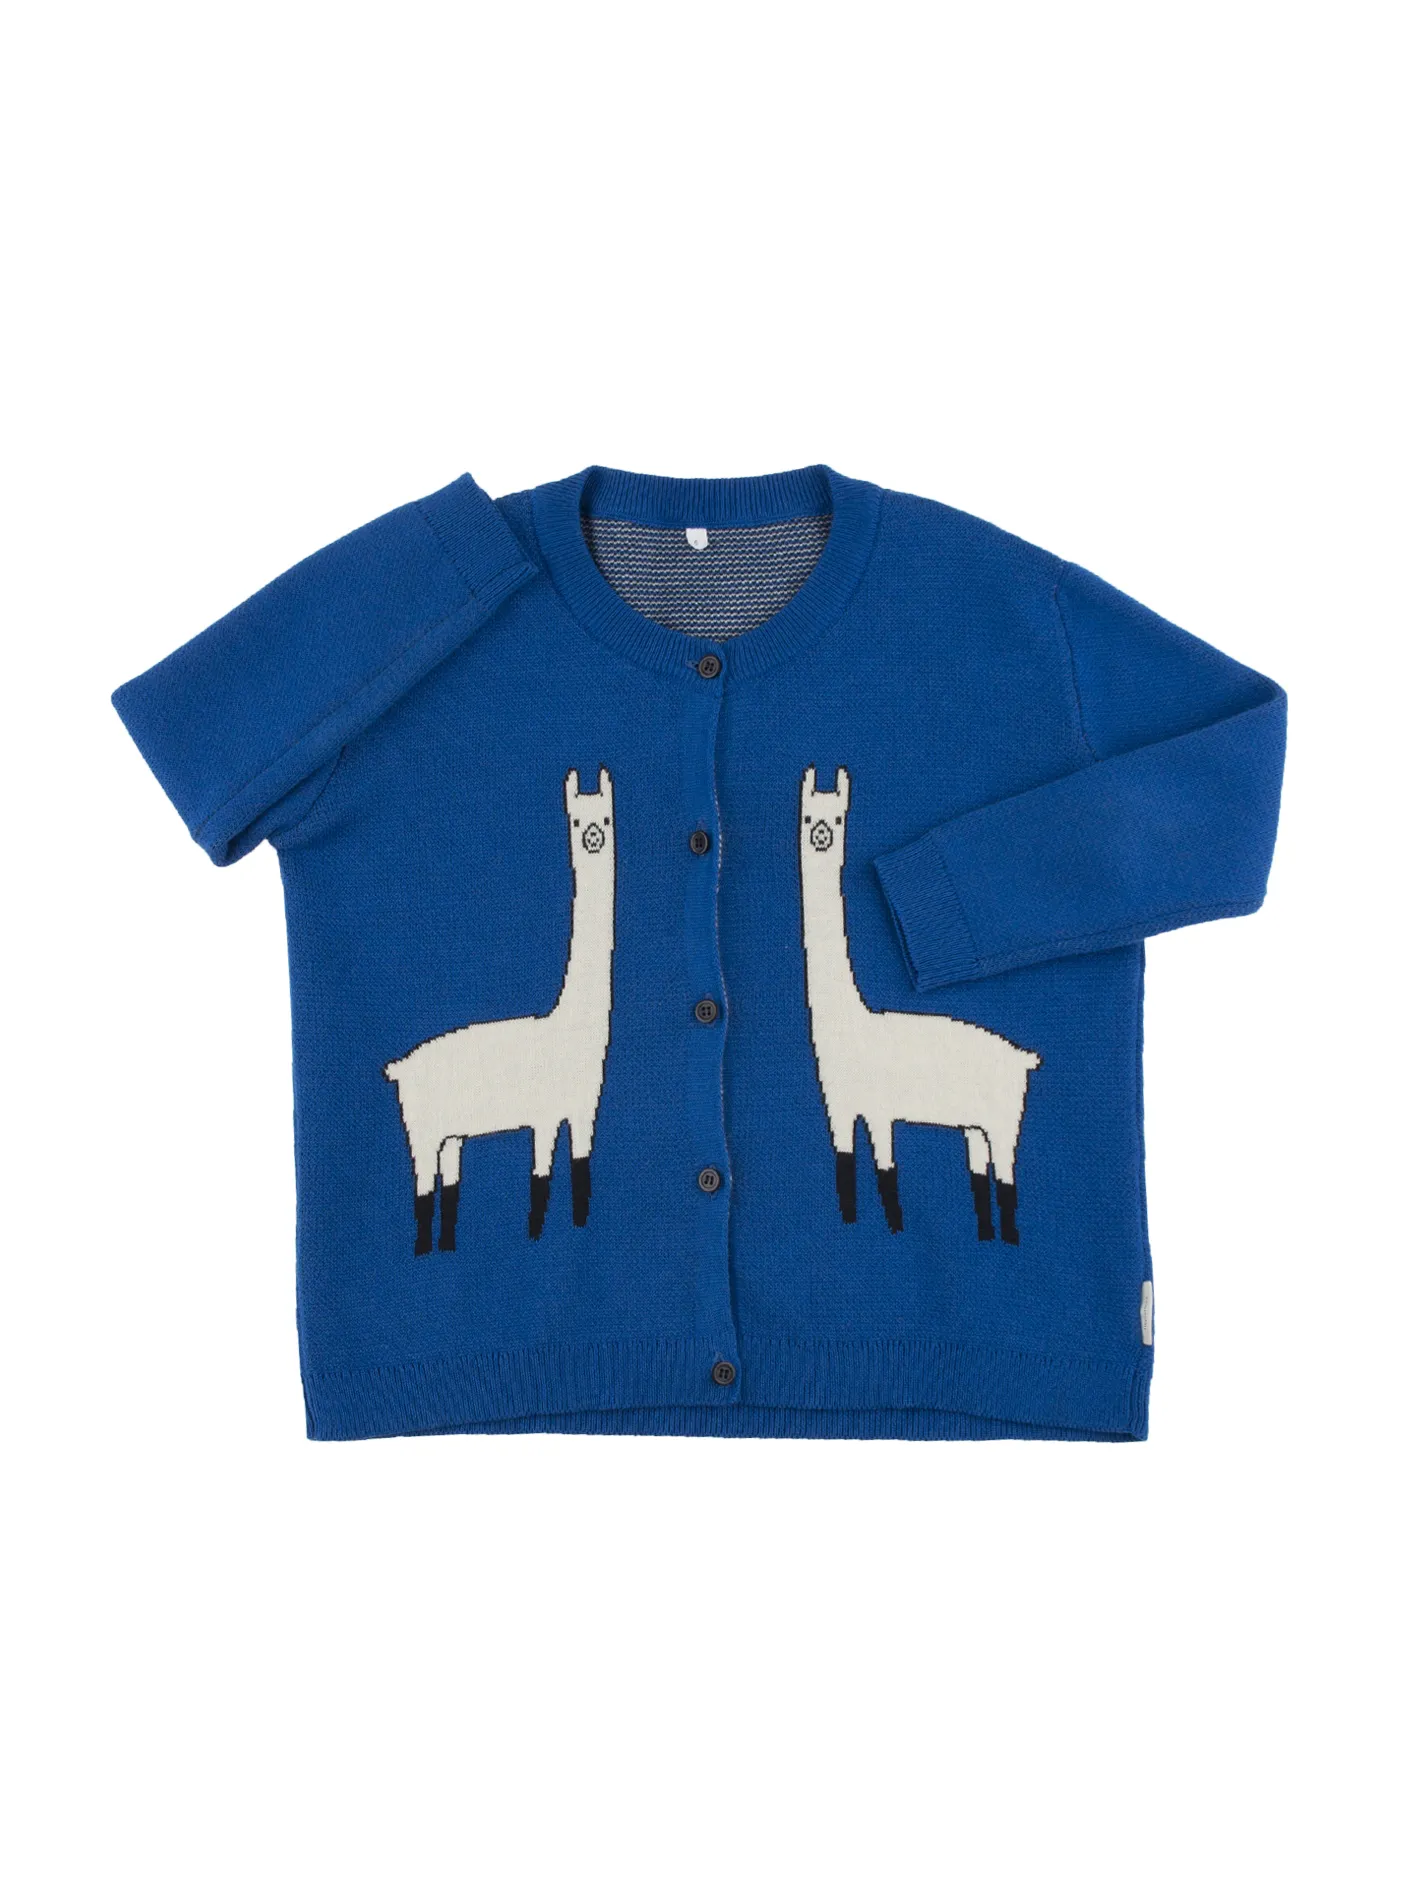 2017 Nieuwe verkopende herfst Girls mode gebreide vestkastje trui jas jassen kinderen alpaca printing kleine katoenen kinderen39s doekje 4966642